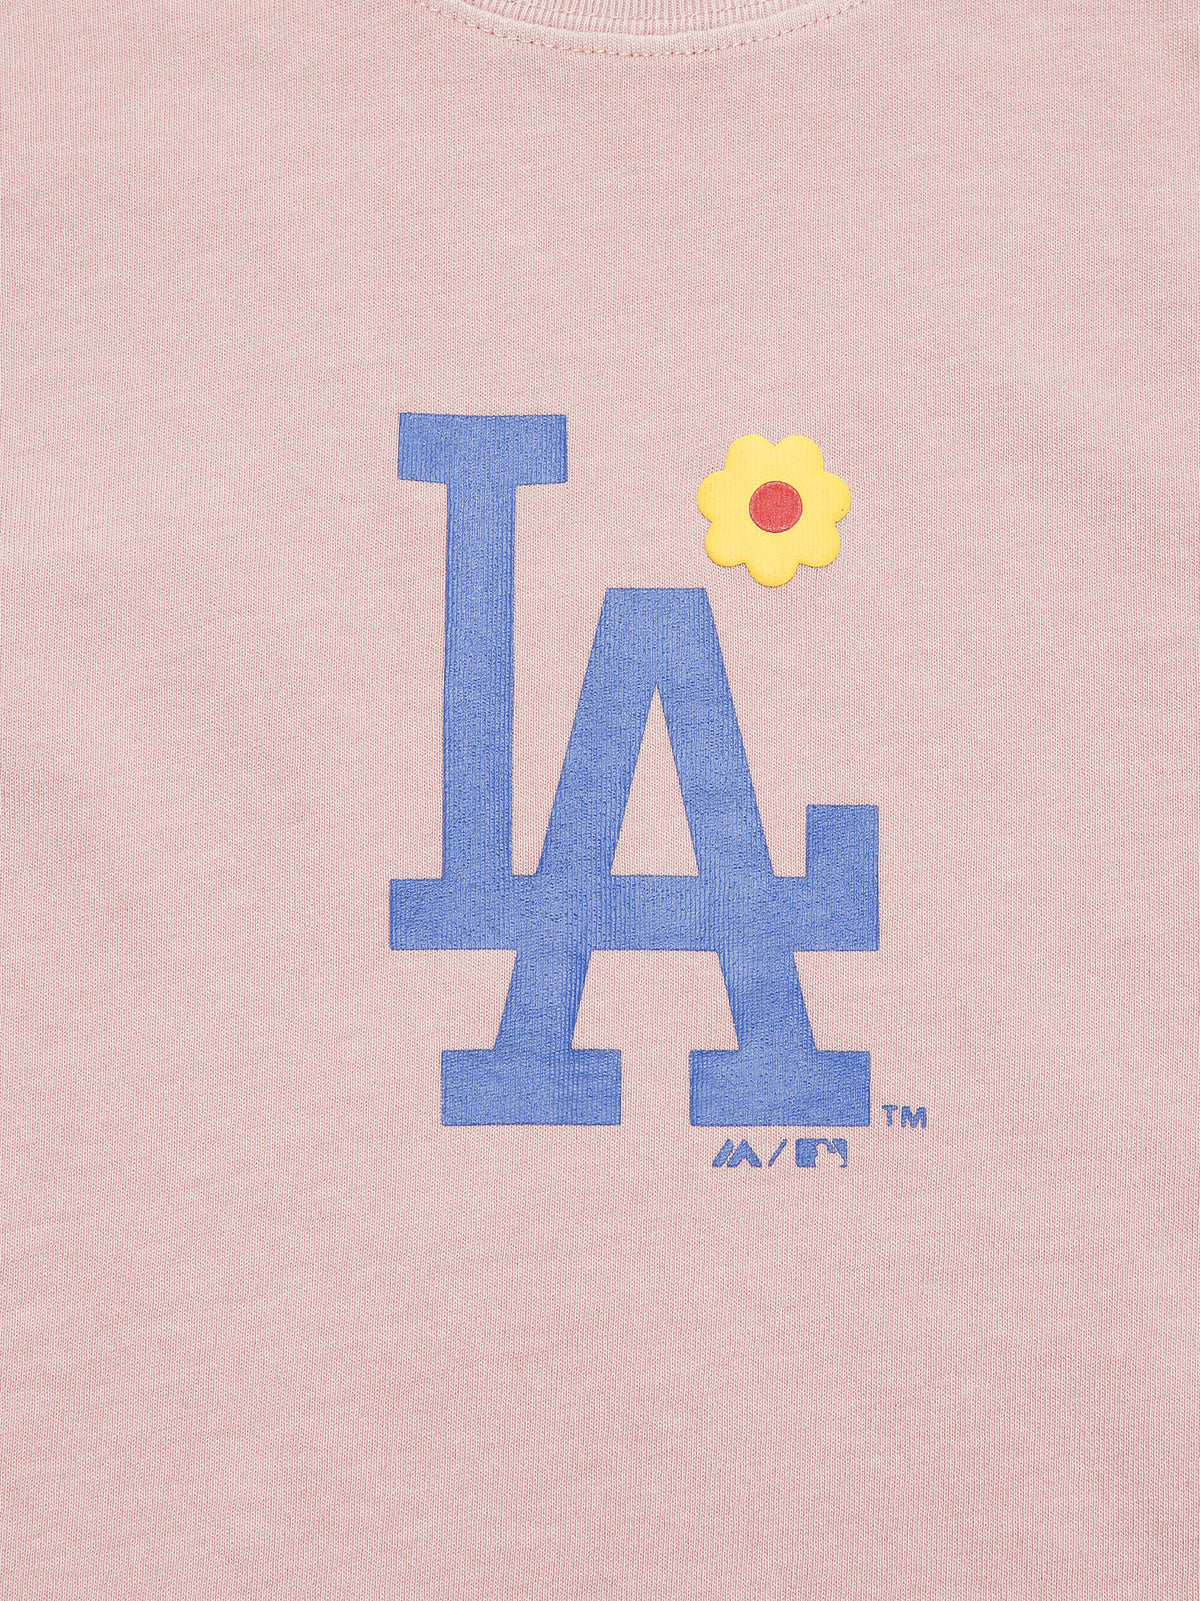 LA Dodgers Bespoke Logo T-Shirt in Clay